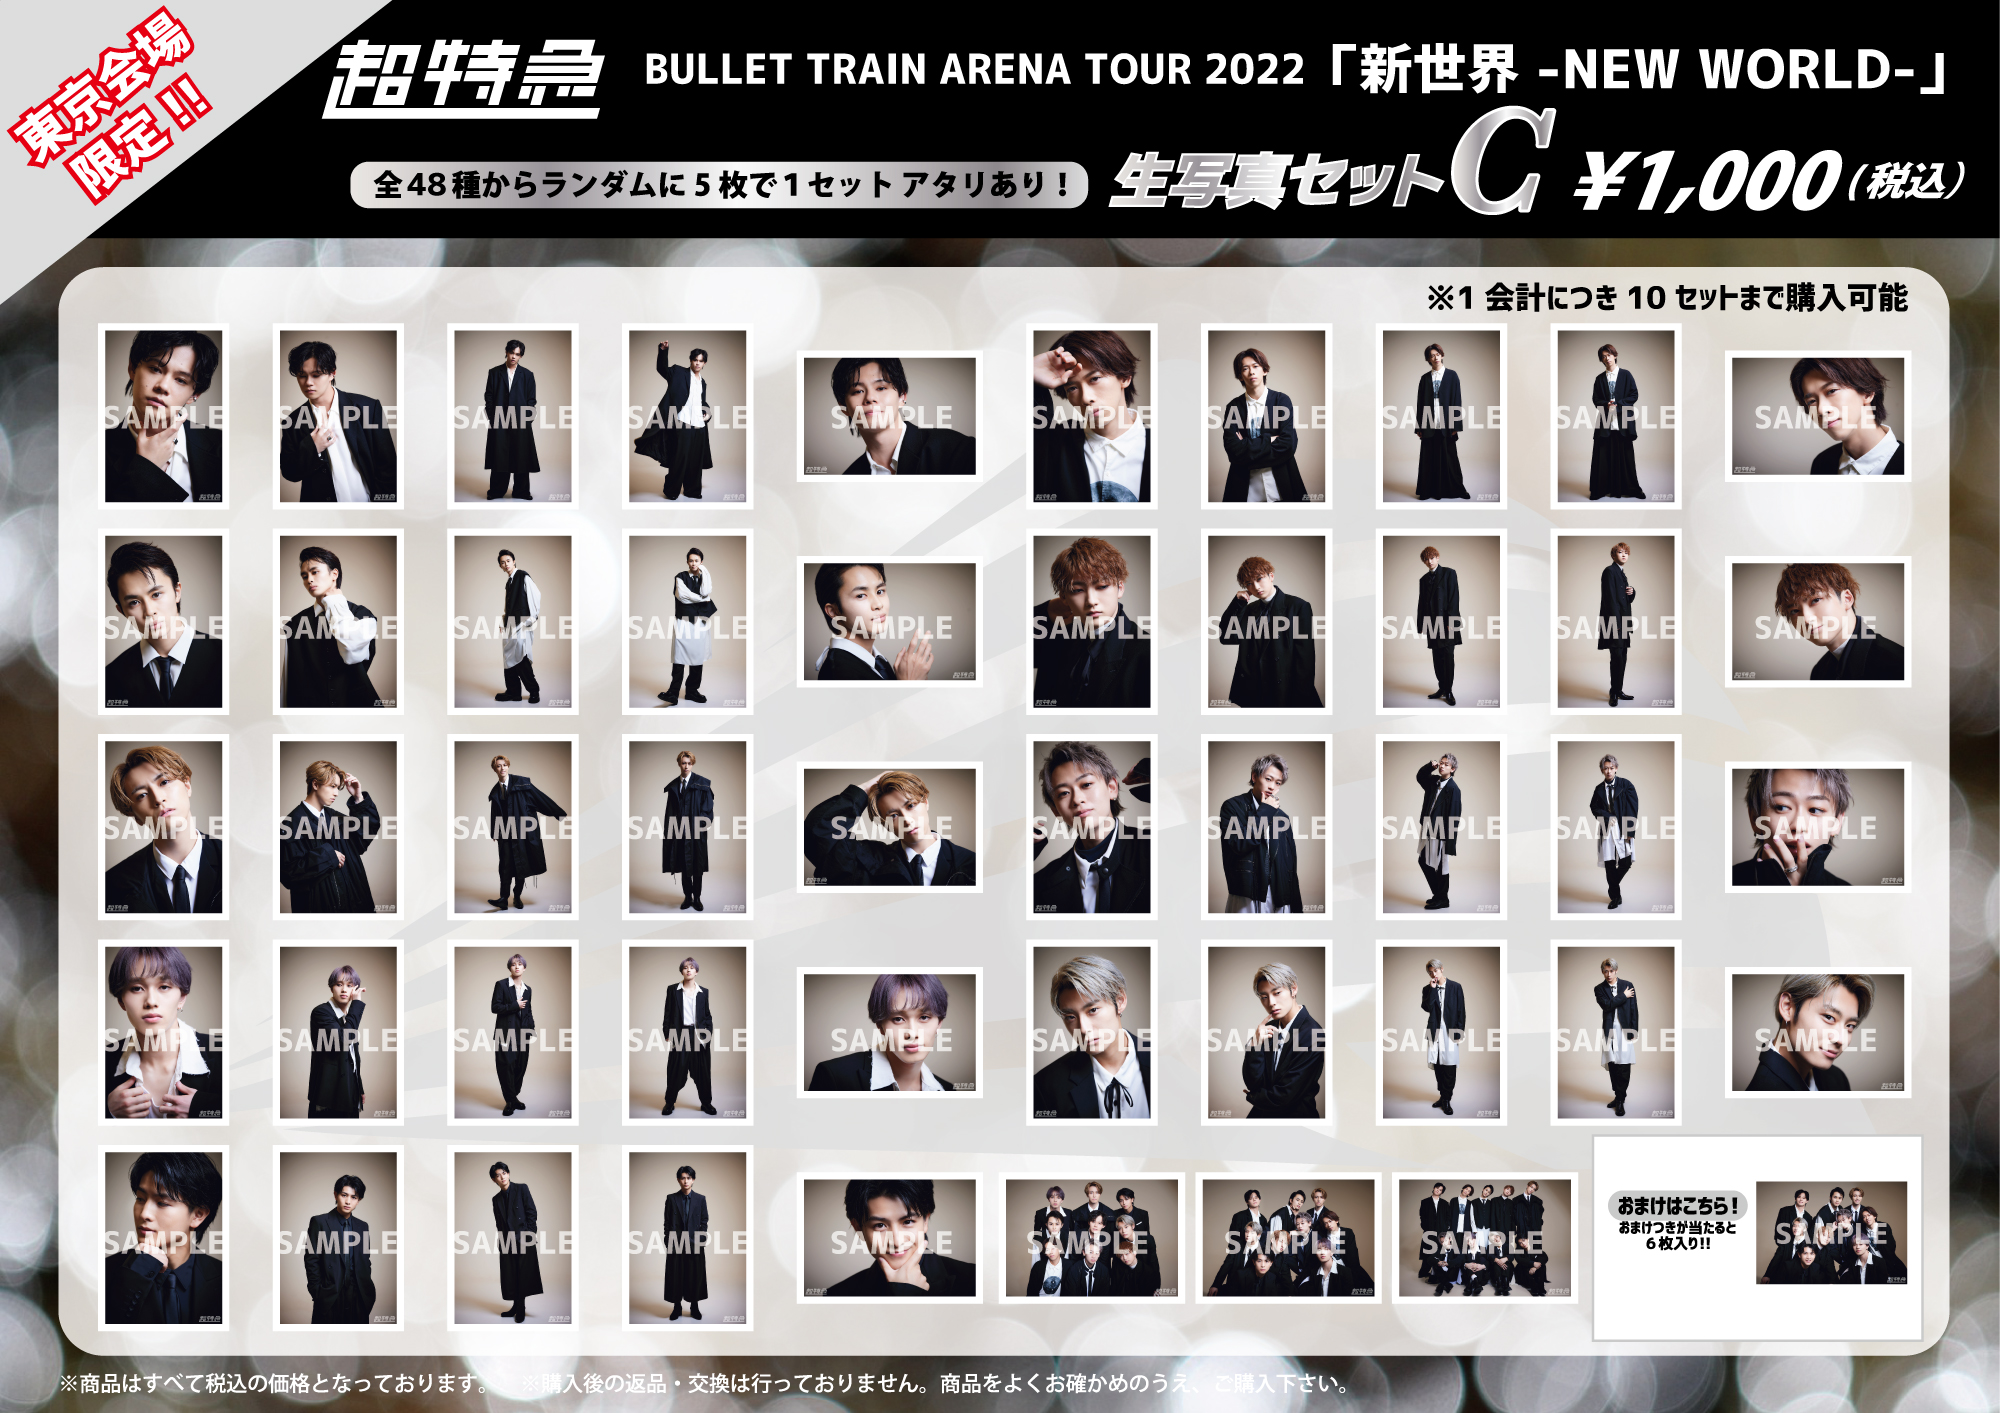 BULLET TRAIN ARENA TOUR 2022「新世界 -NEW WORLD-」オフィシャル ...